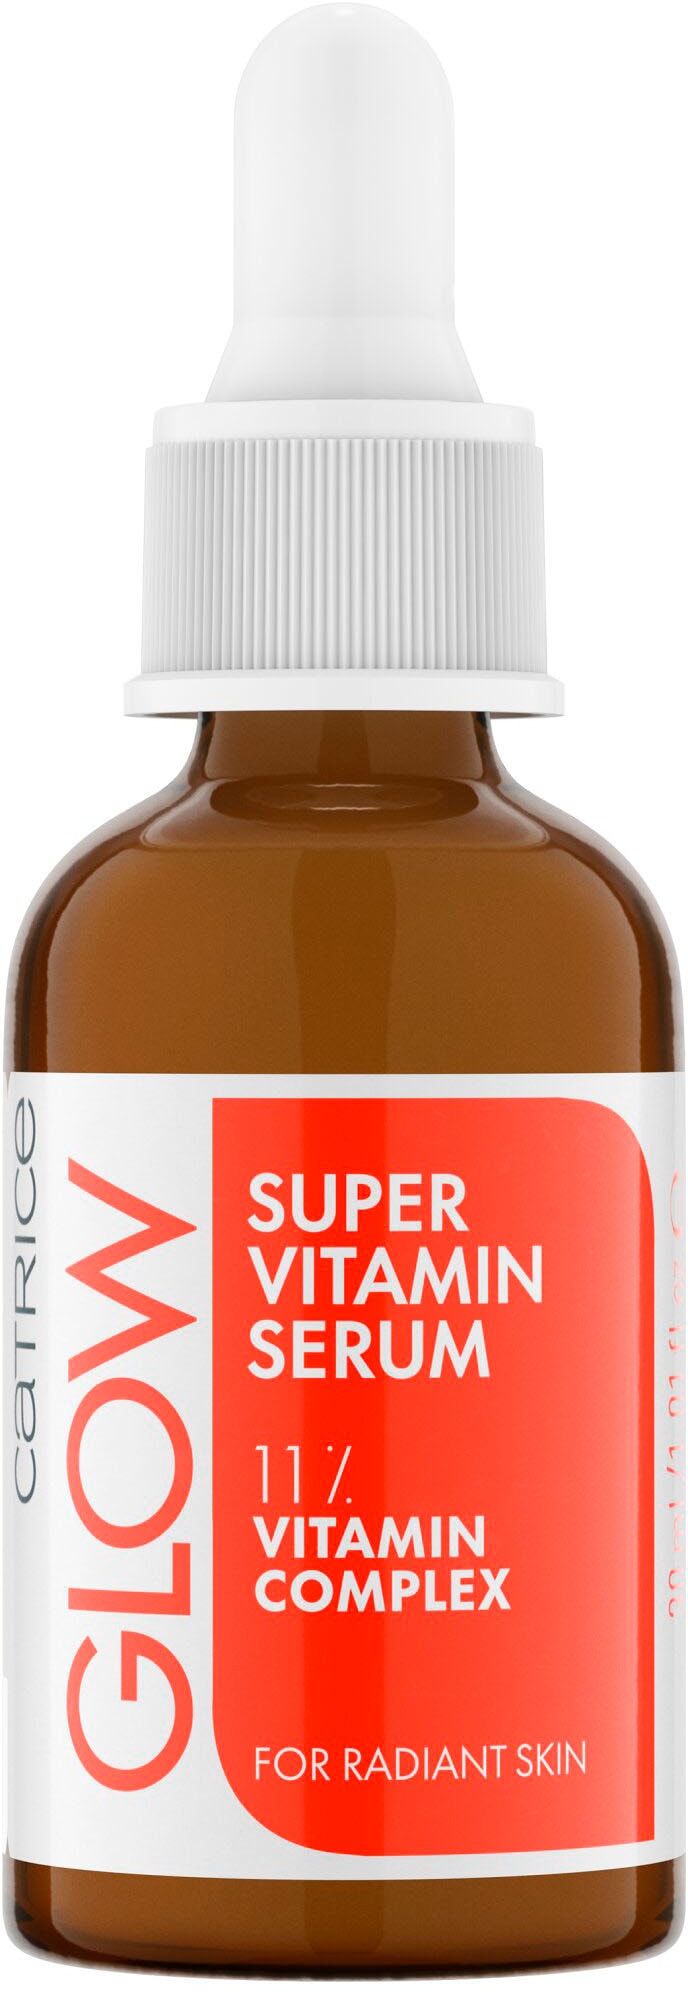 Vitamin online Catrice Super Serum« Gesichtsserum kaufen »Glow